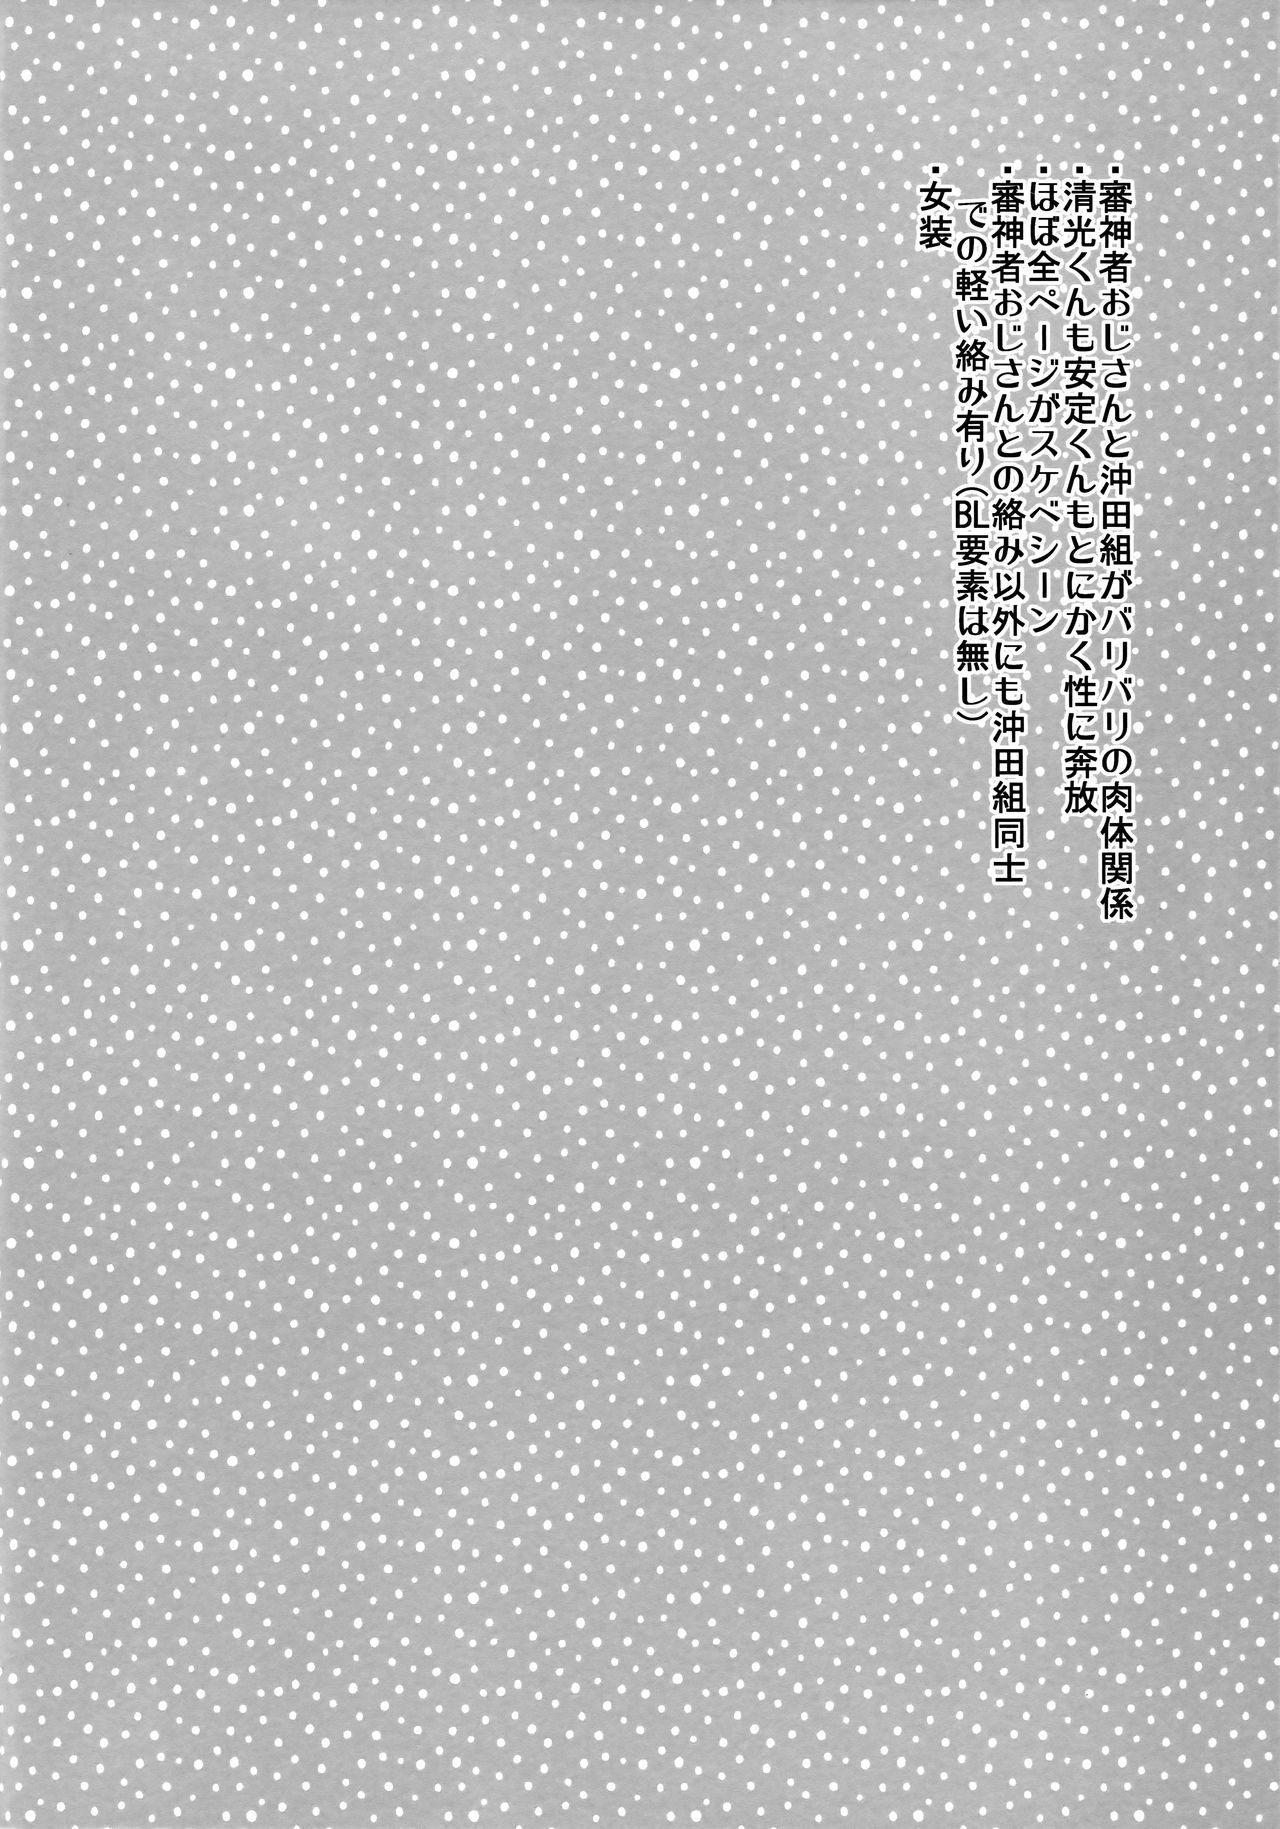 Sislovesme Nakayoshi Gaman Ganbare Ganbare - Touken ranbu 18yearsold - Page 3